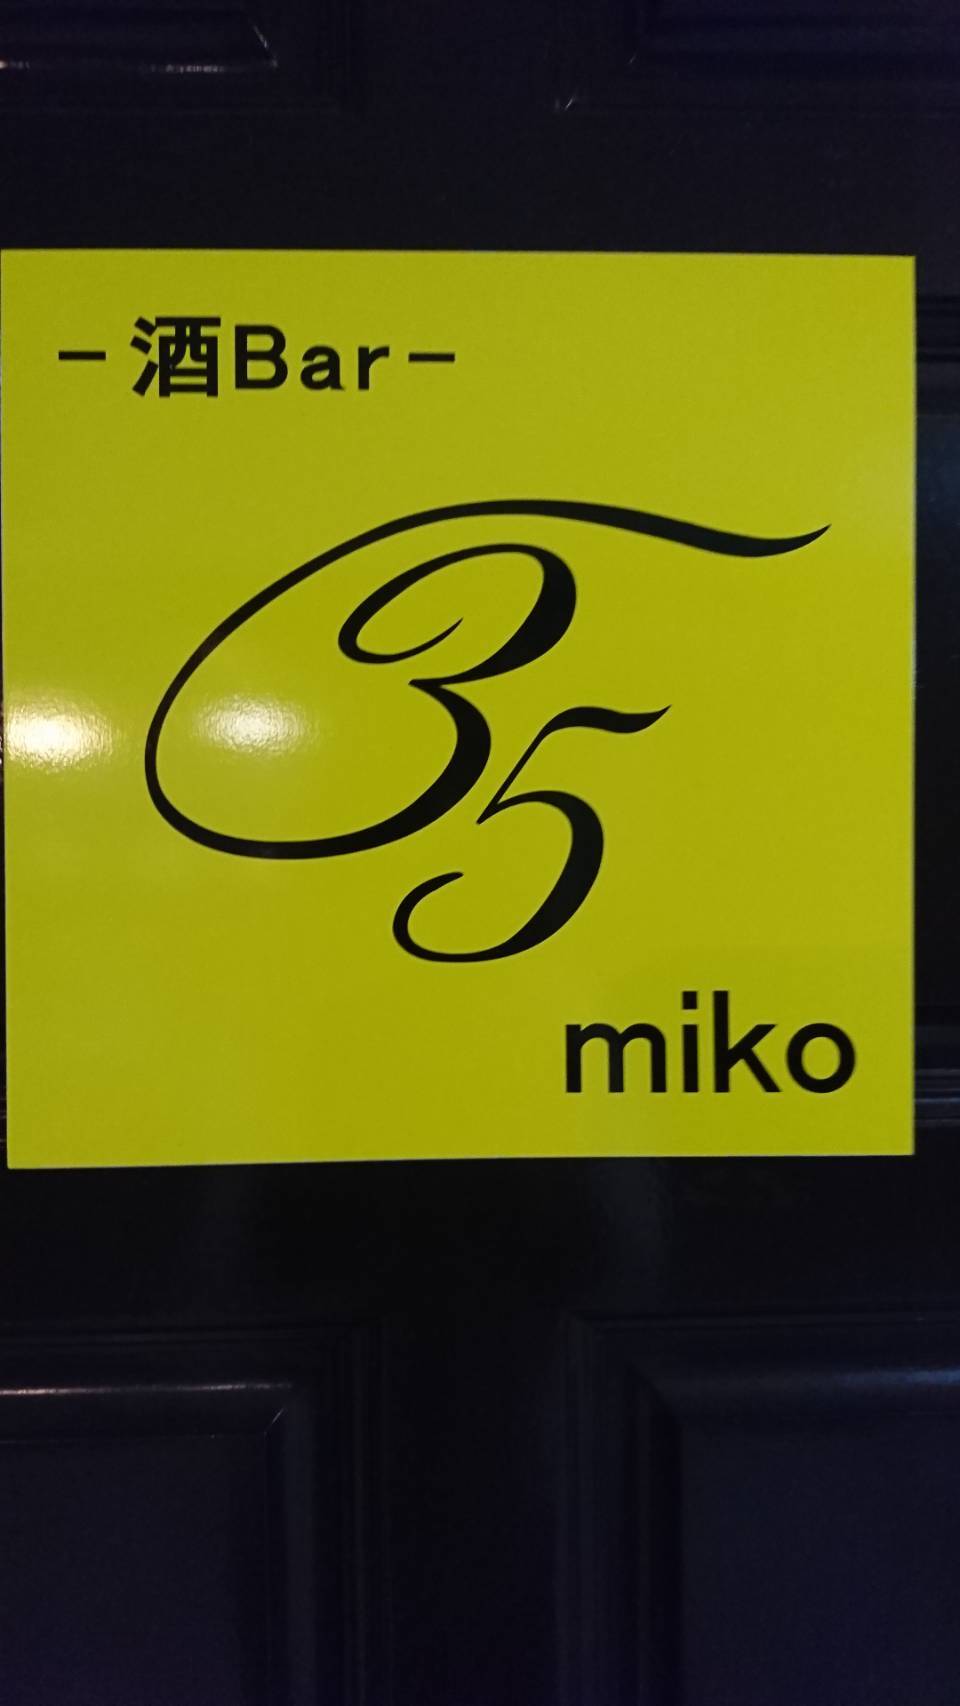 酒Bar35miko(さかばーみこ)